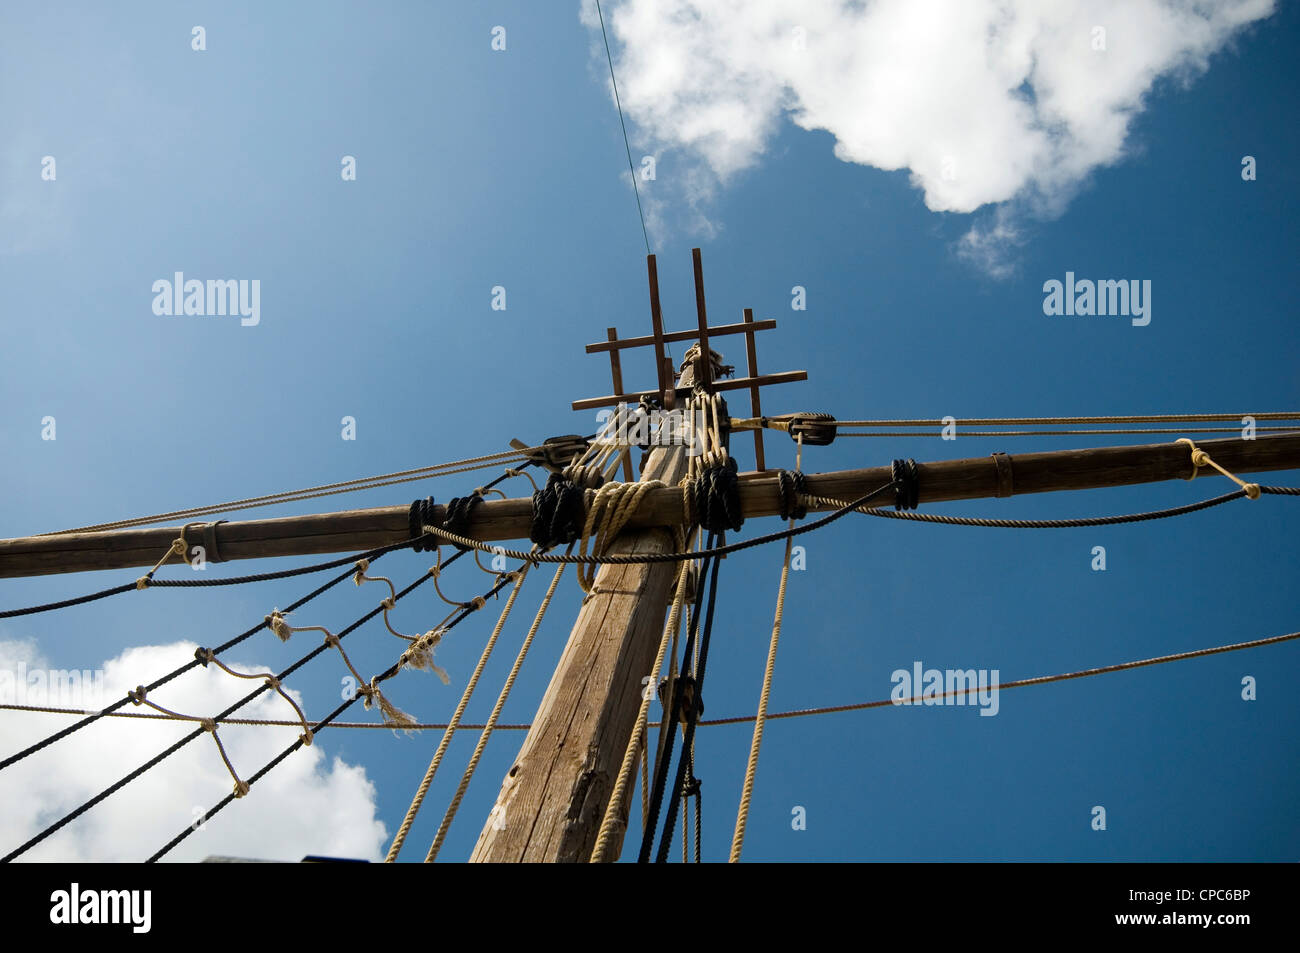 Rigging-Schiff Schiffe Seil Seile Mast Segel Segel Klettern Klettern quadratische Piraten Piraten Crows Nest crowsnest Stockfoto